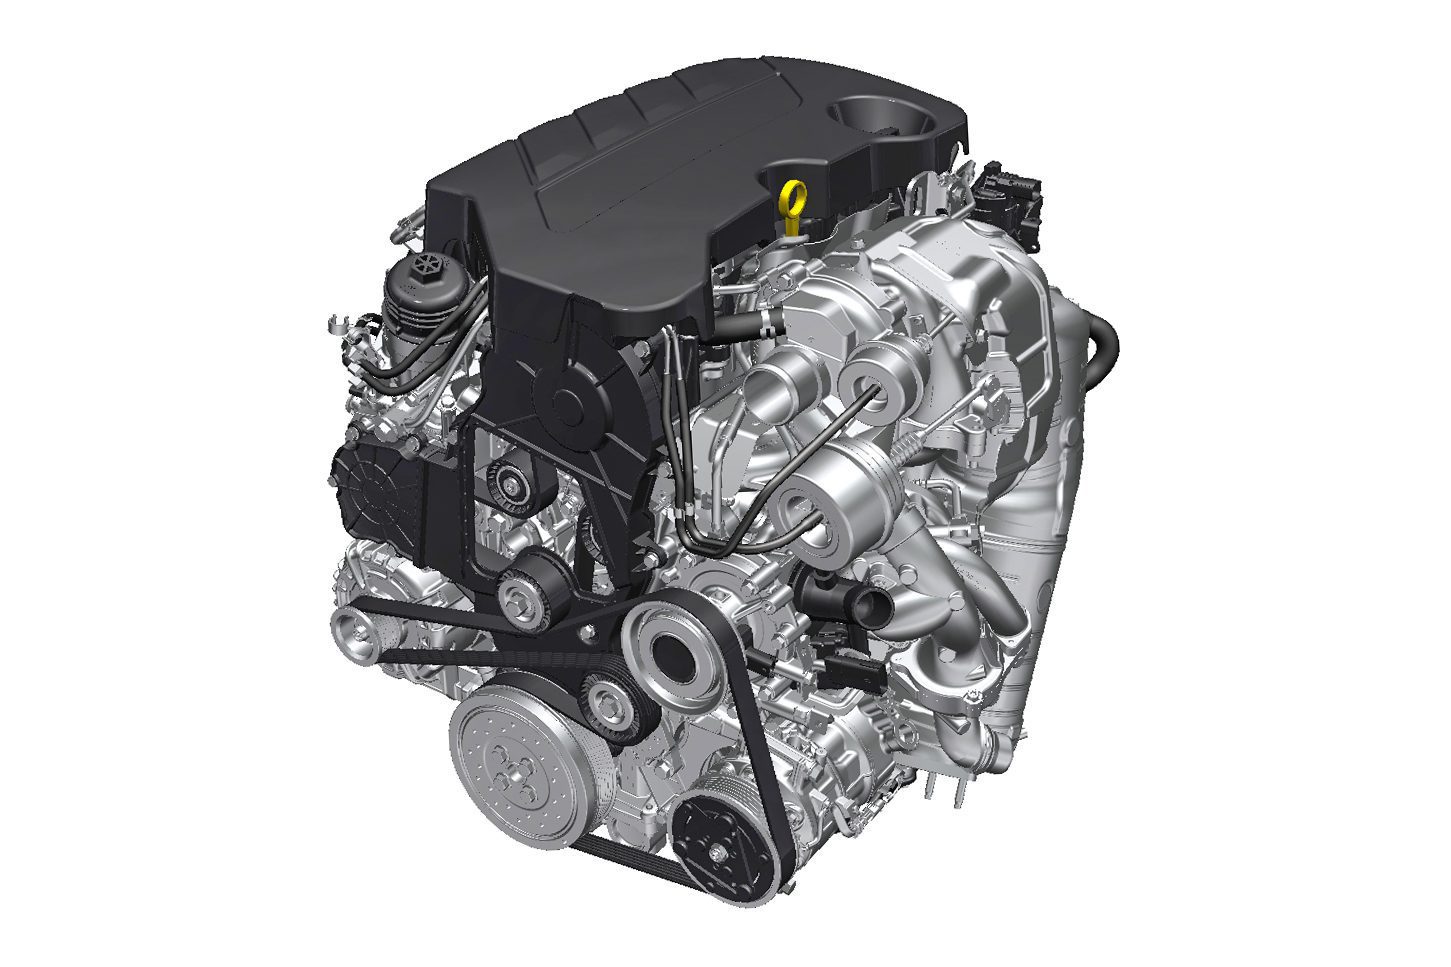 Motore Opel Biturbo Diesel 